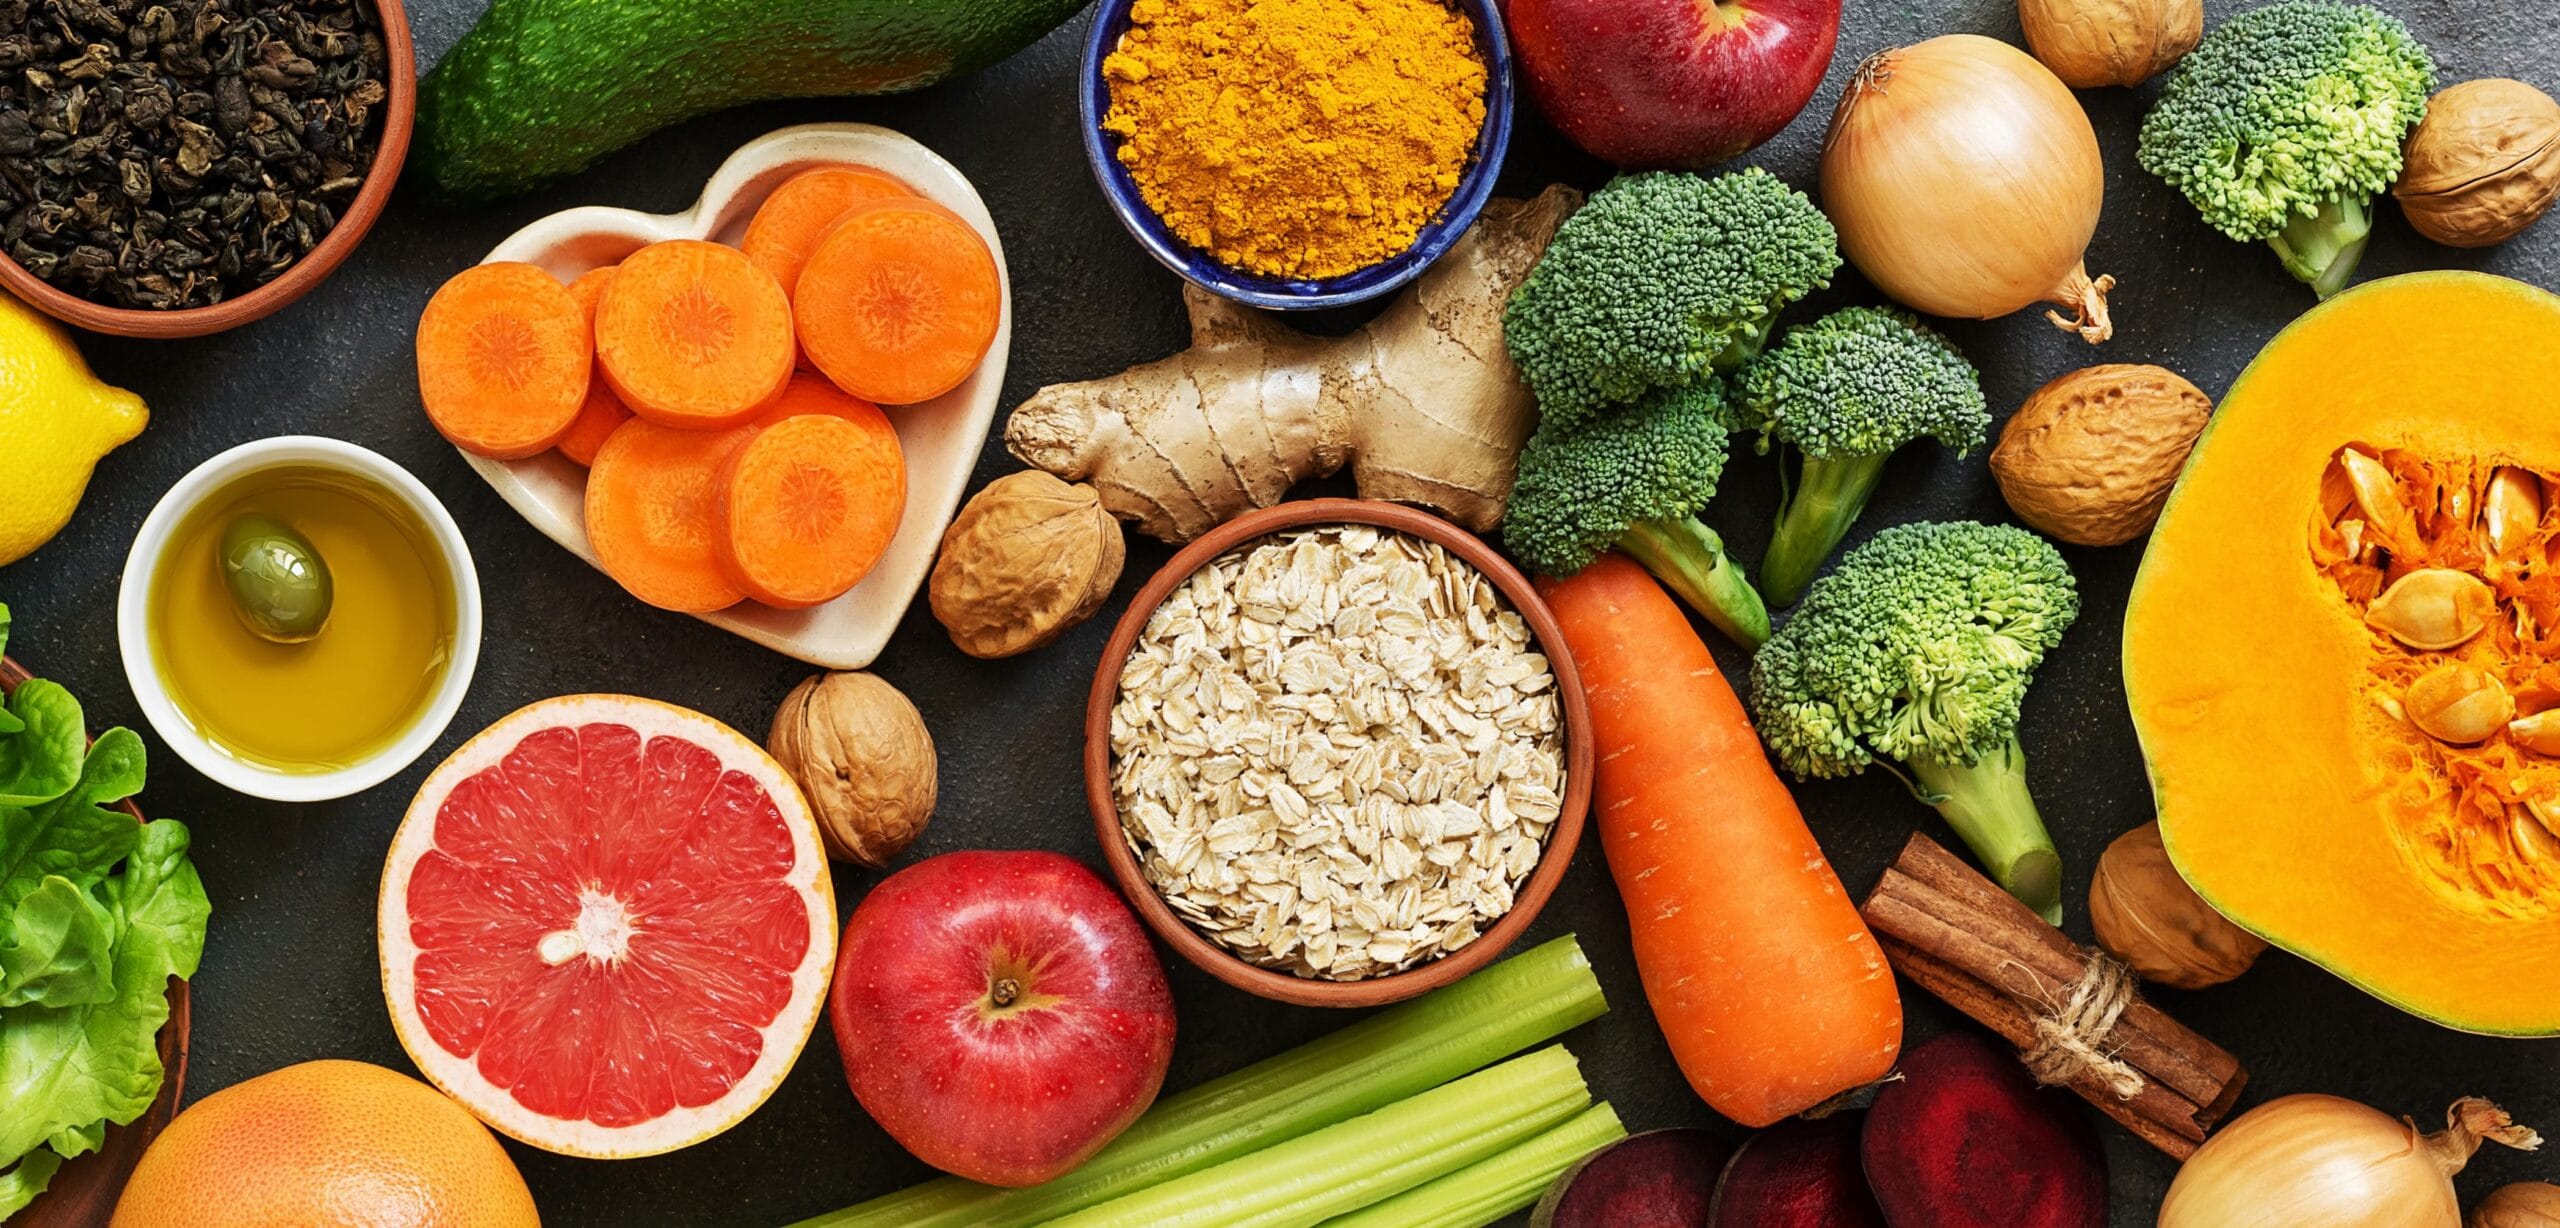 fibre alimentari, frutta e verdura in abbondanza